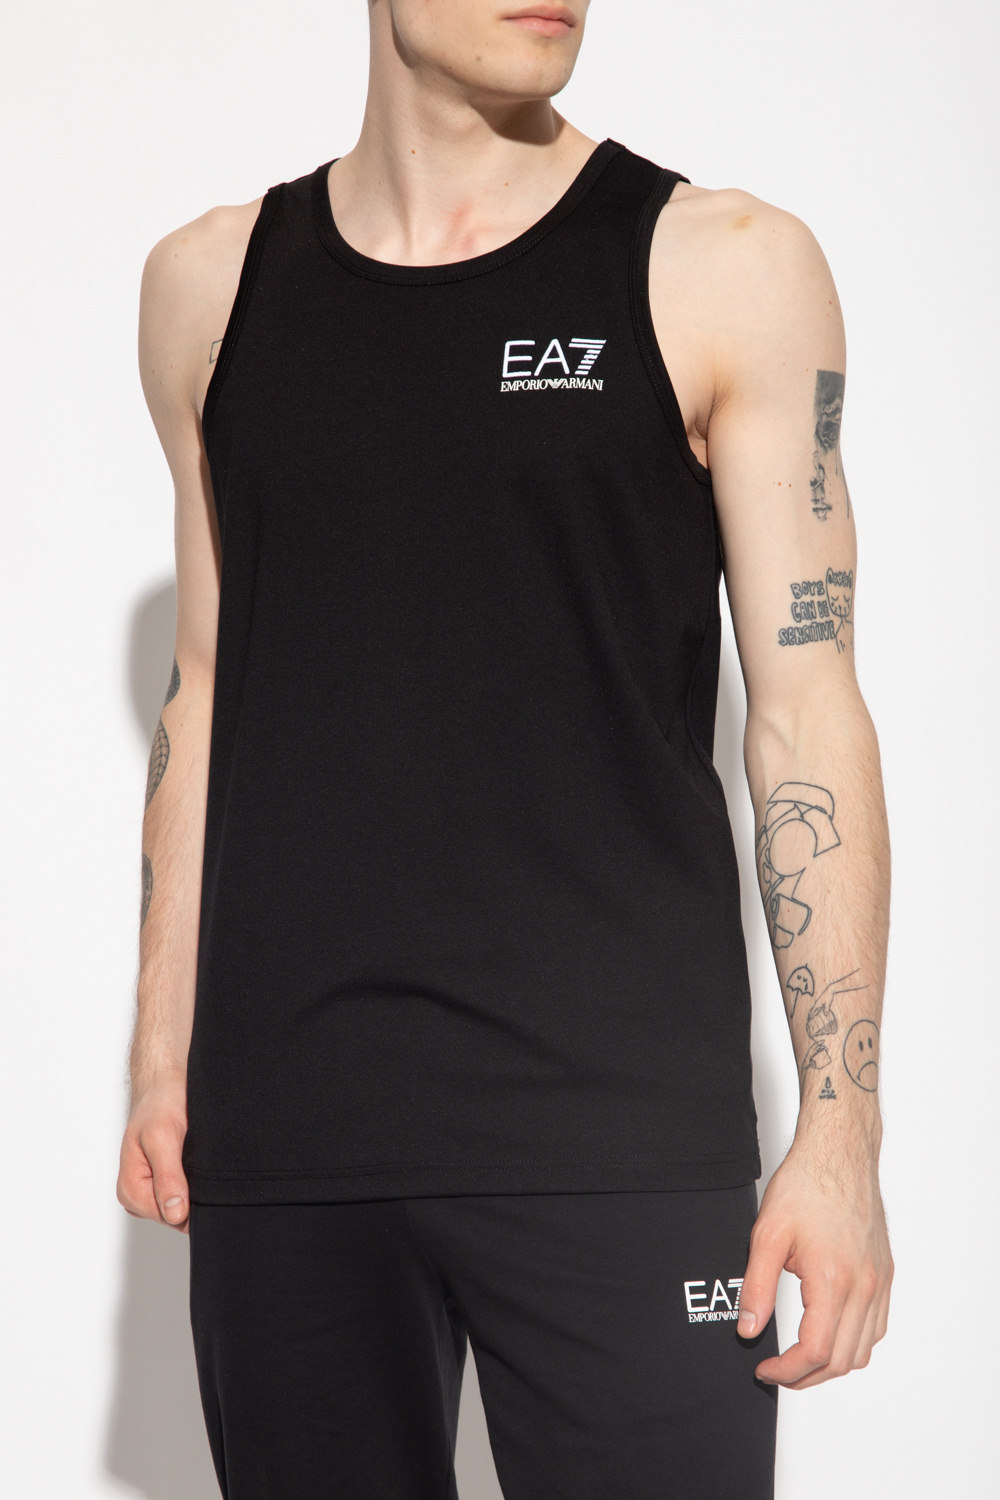 EA7 Emporio armani single-breasted Sleeveless T-shirt